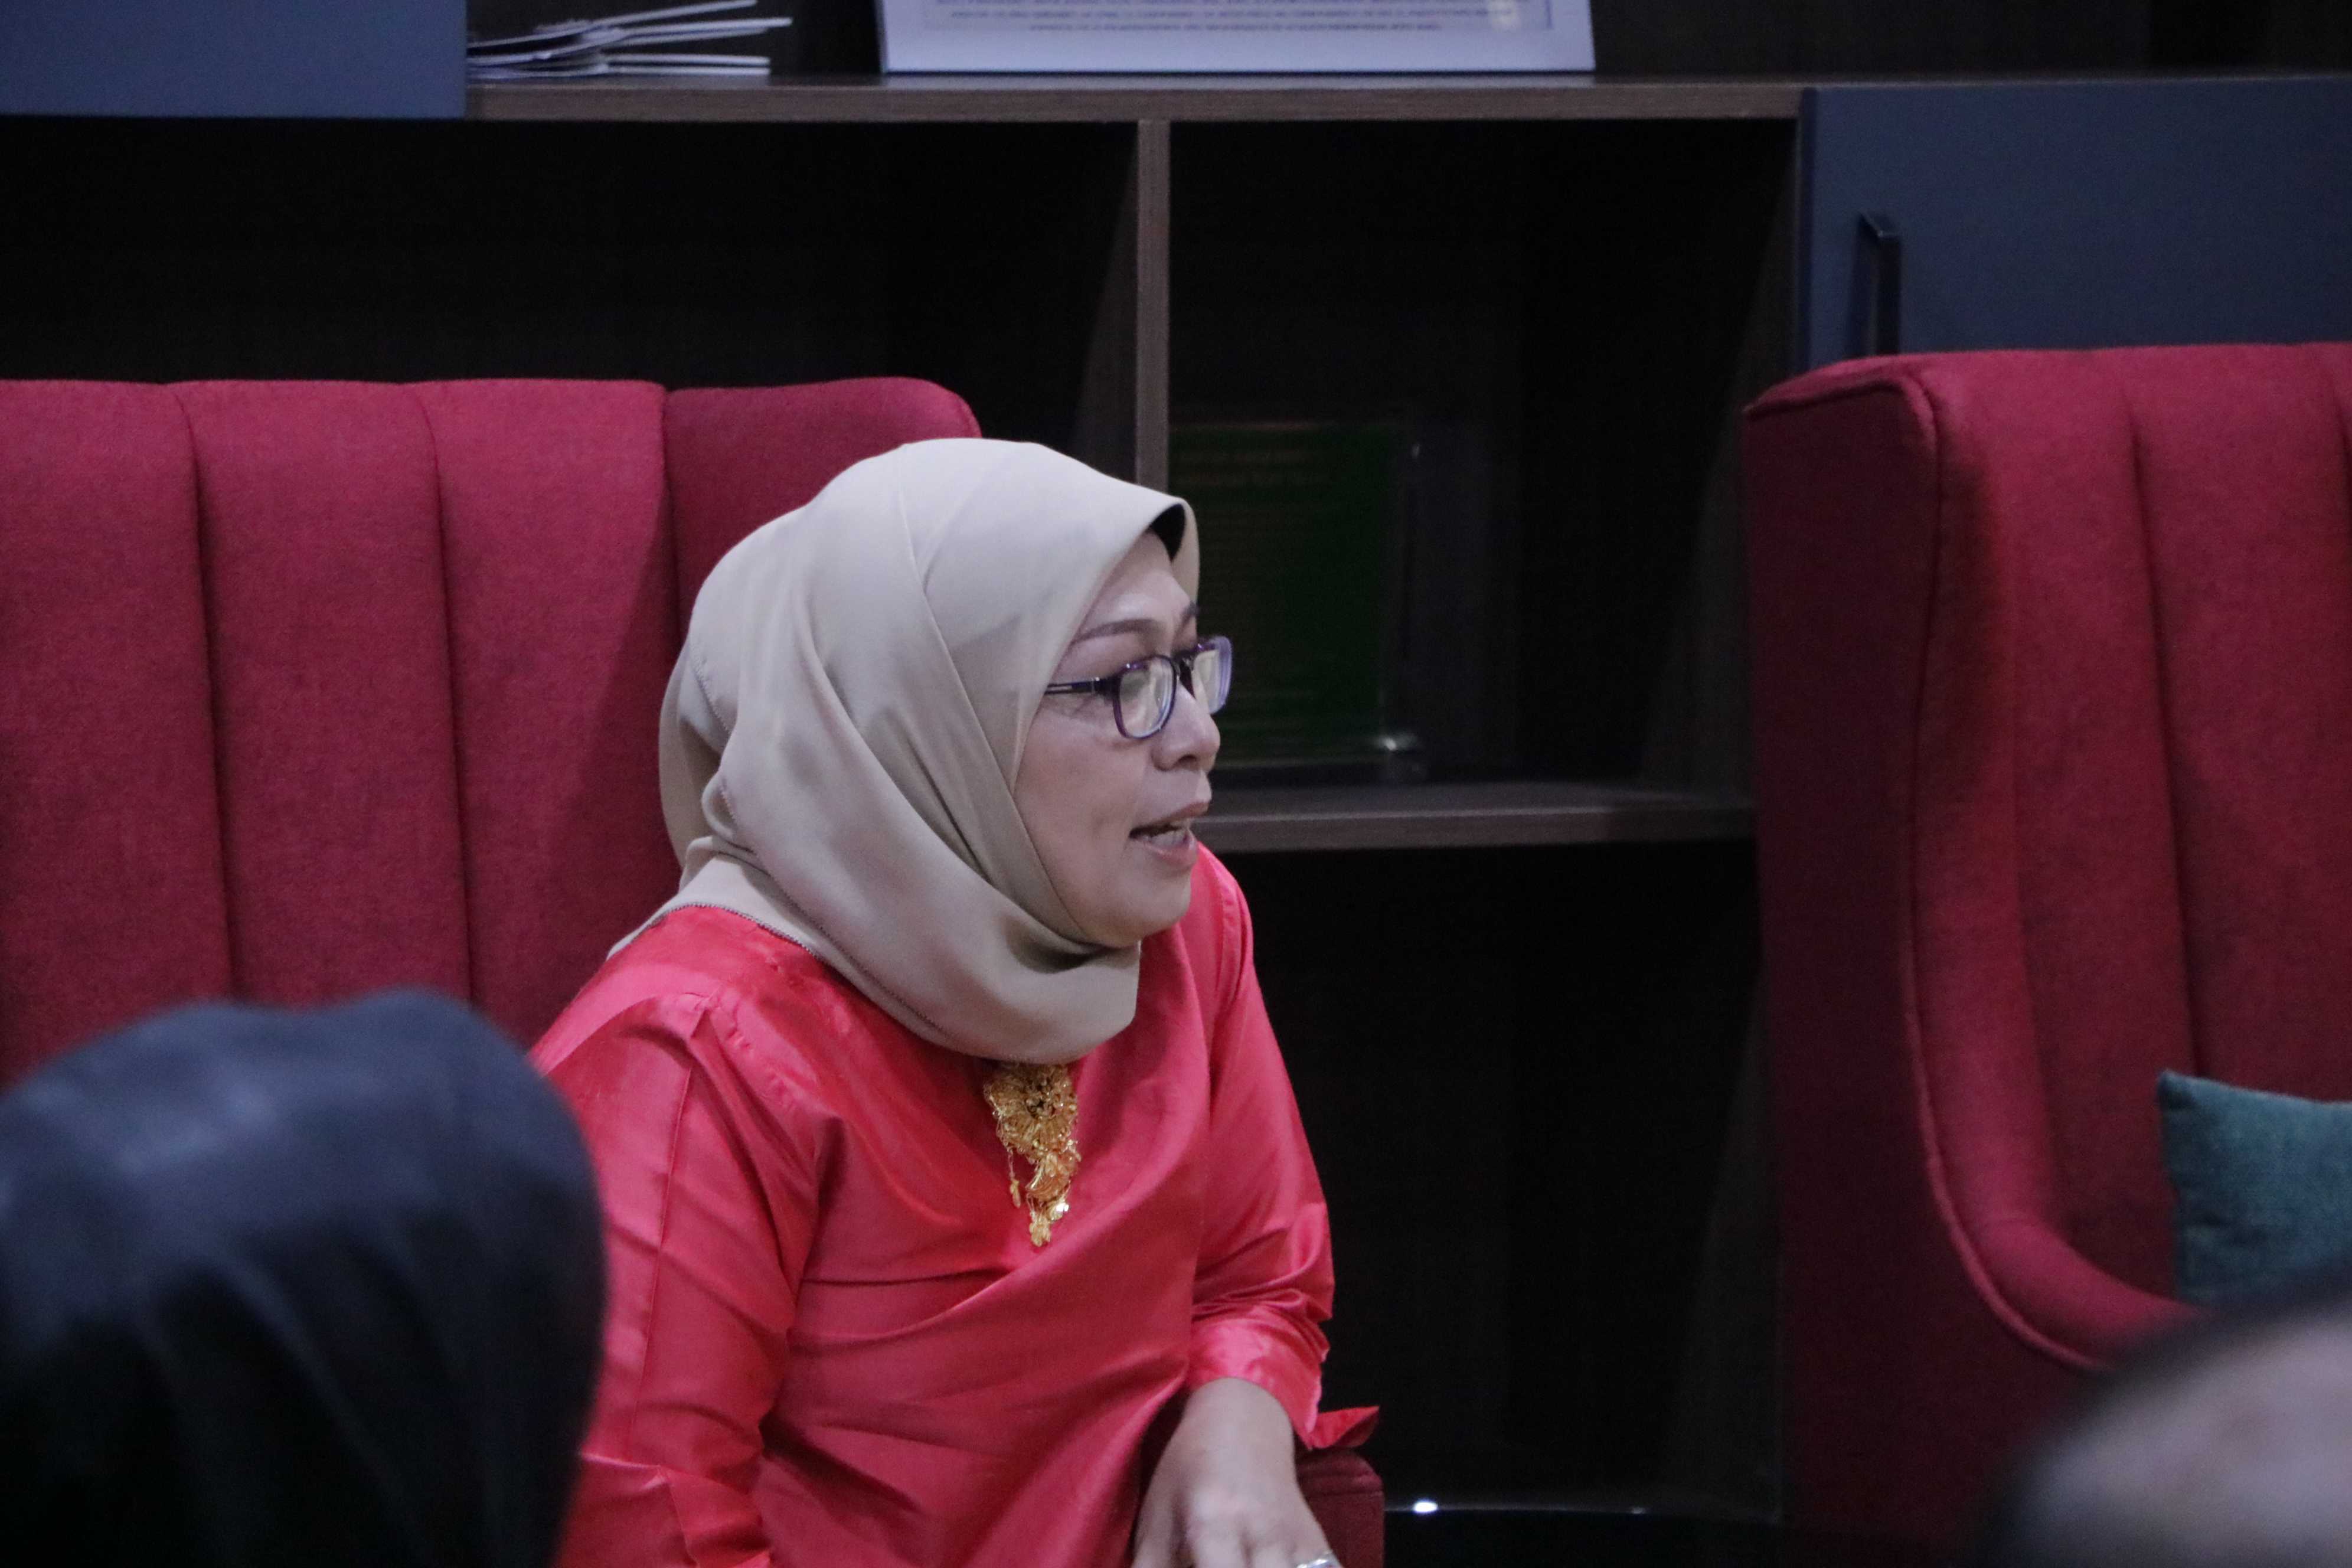 Pengukuhan Prof Dr Wicipto Setiadi SH MH Guru Besar bidang Ilmu Hukum Fakultas Hukum Universitas Pembangunan Nasional Veteran Jakarta (327)